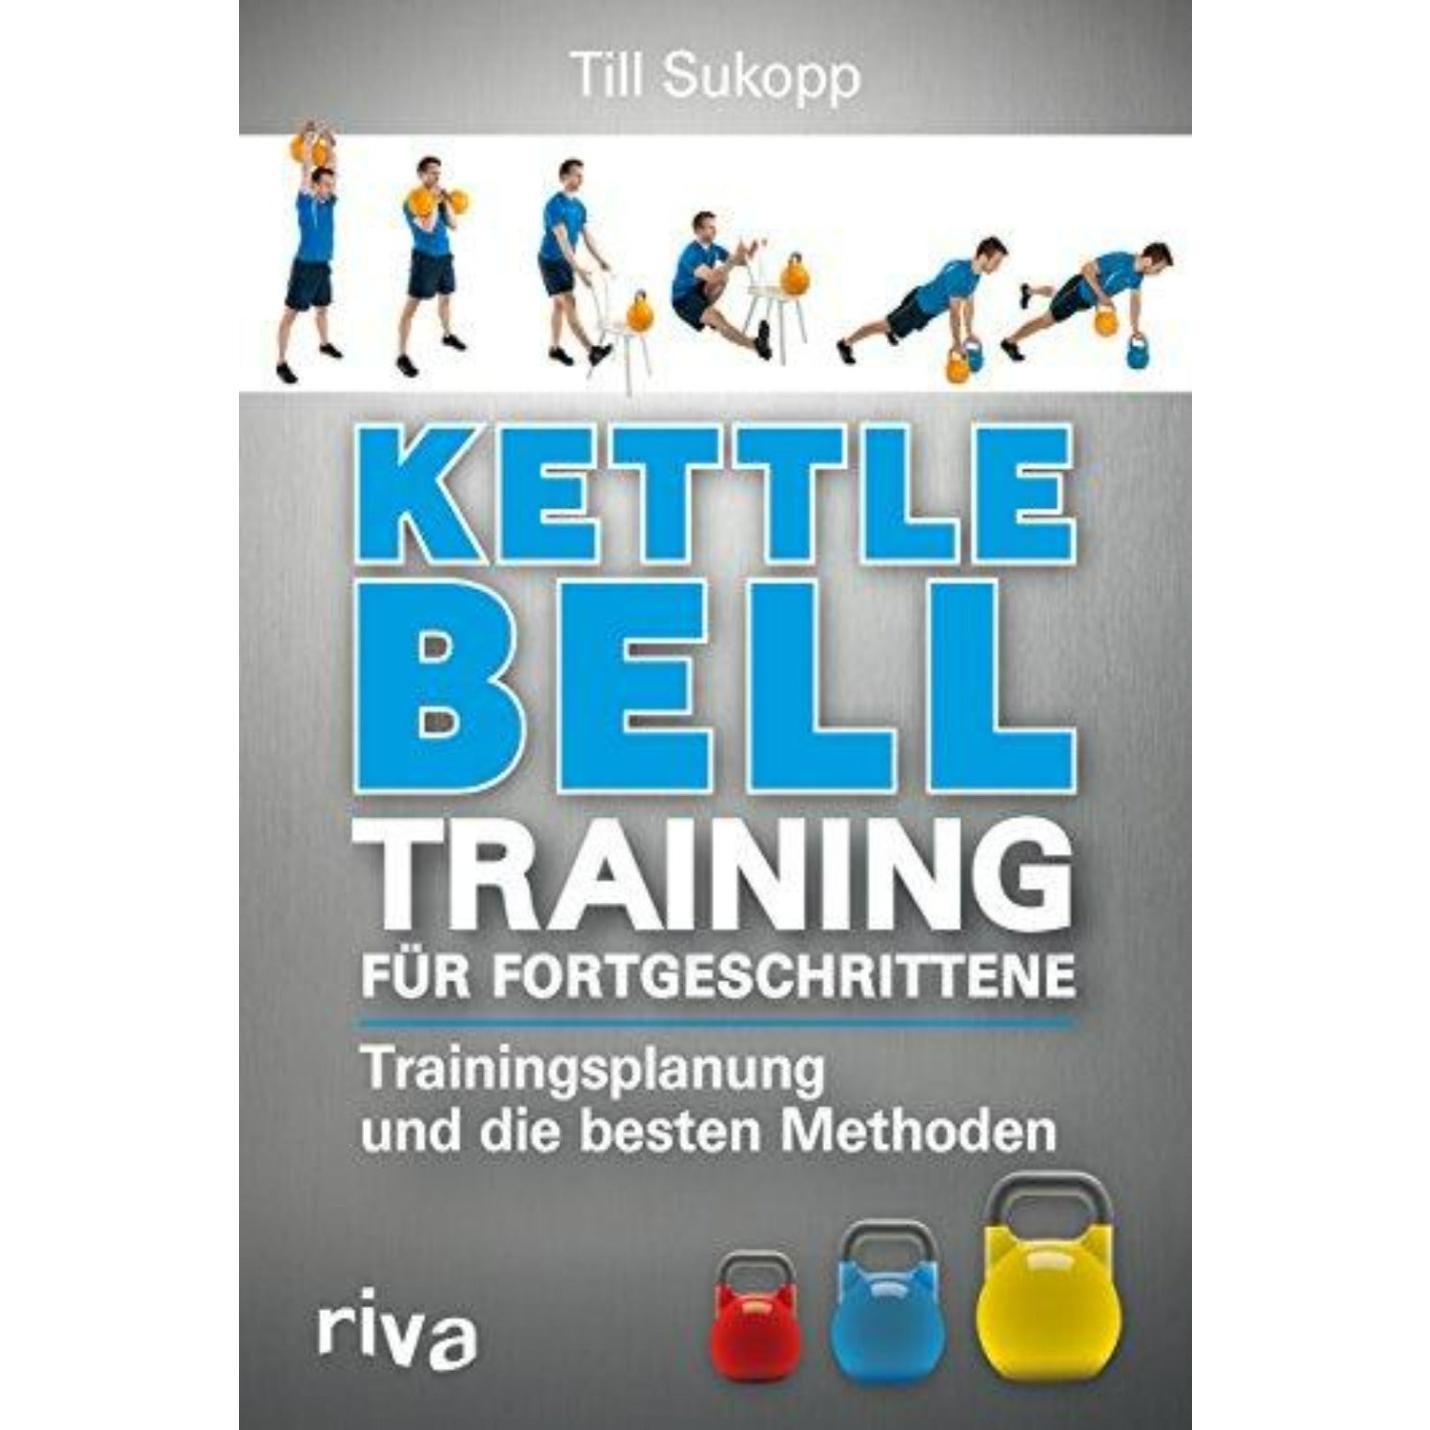 Kettlebell-Training für Fortgeschrittene: Trainingsplanung und die besten Methoden - happygetfit.com